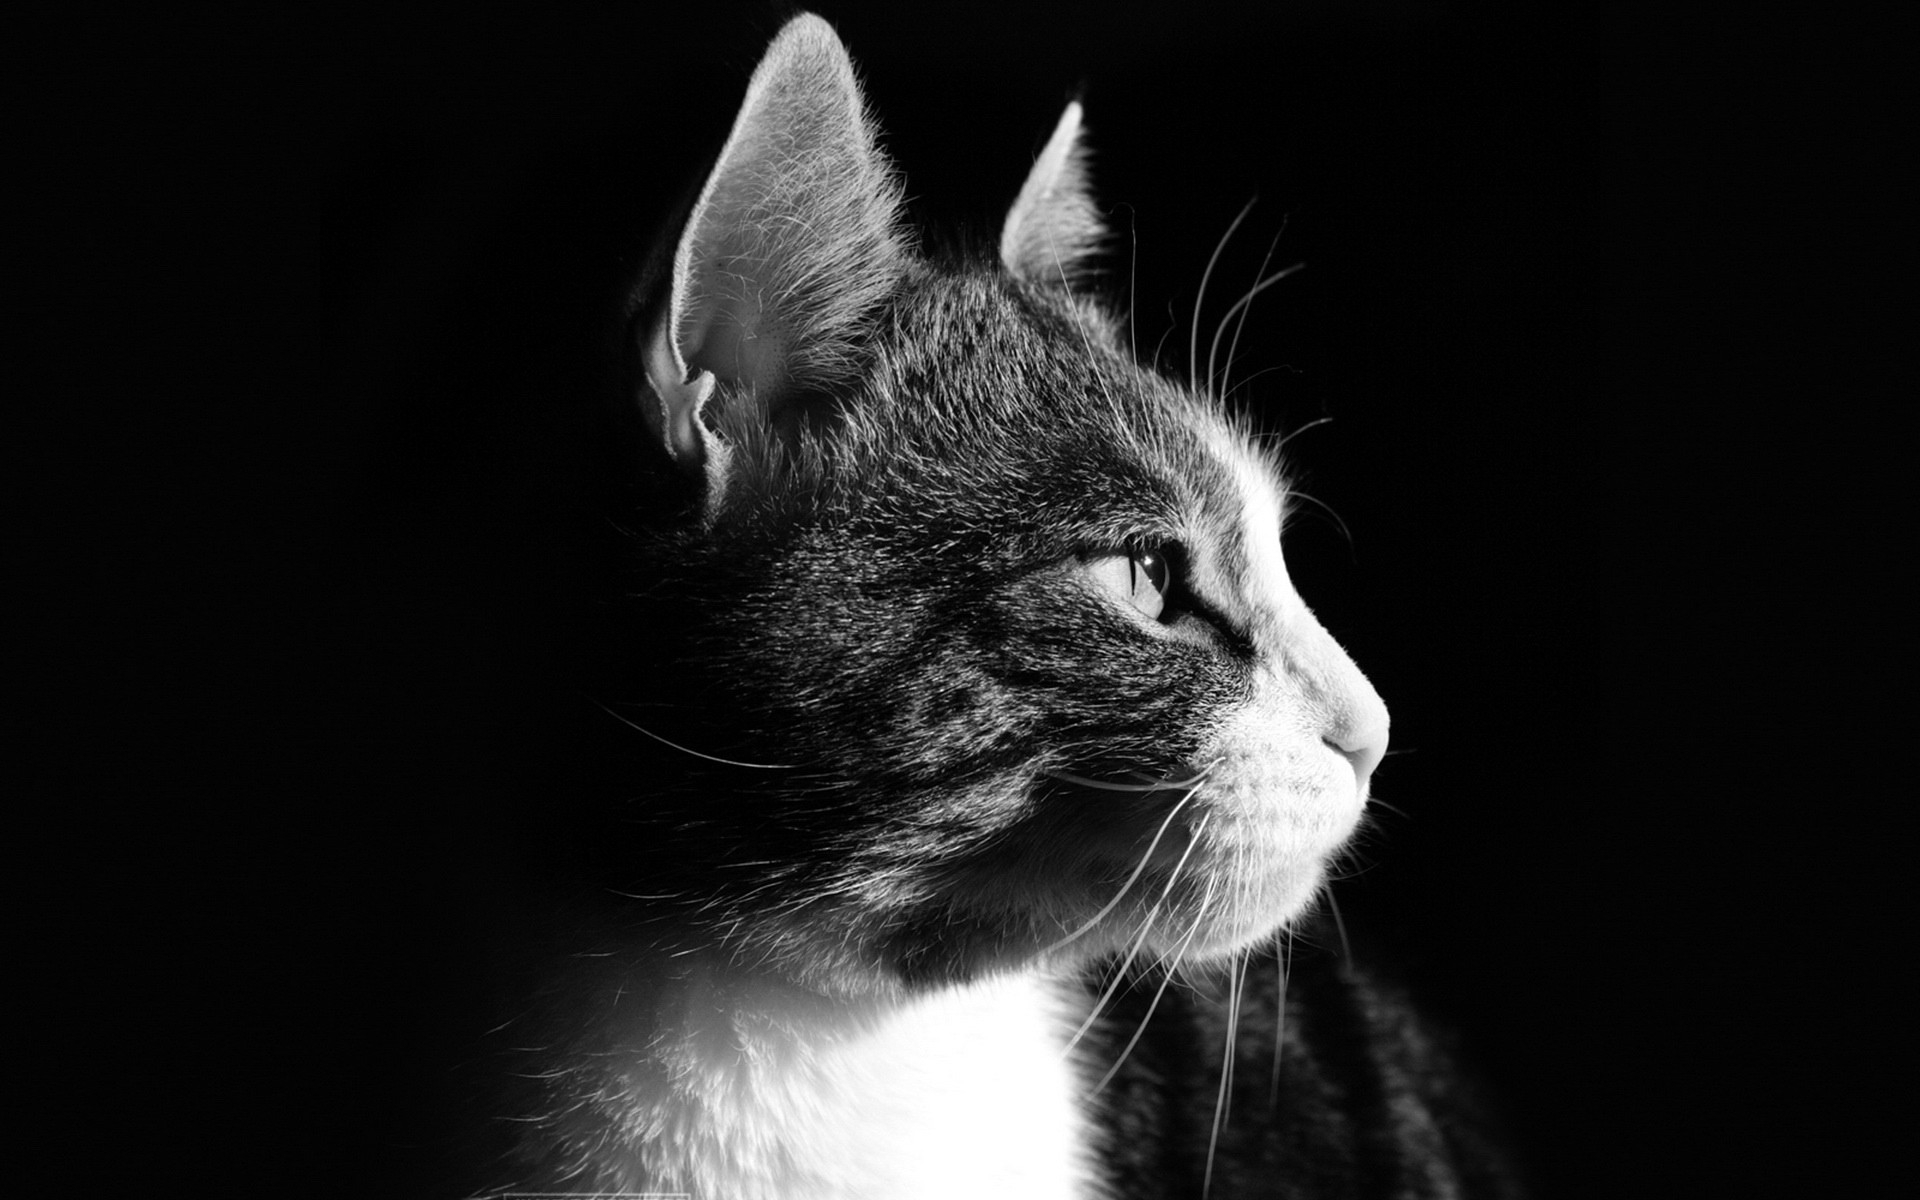 Monochrome cat portrait